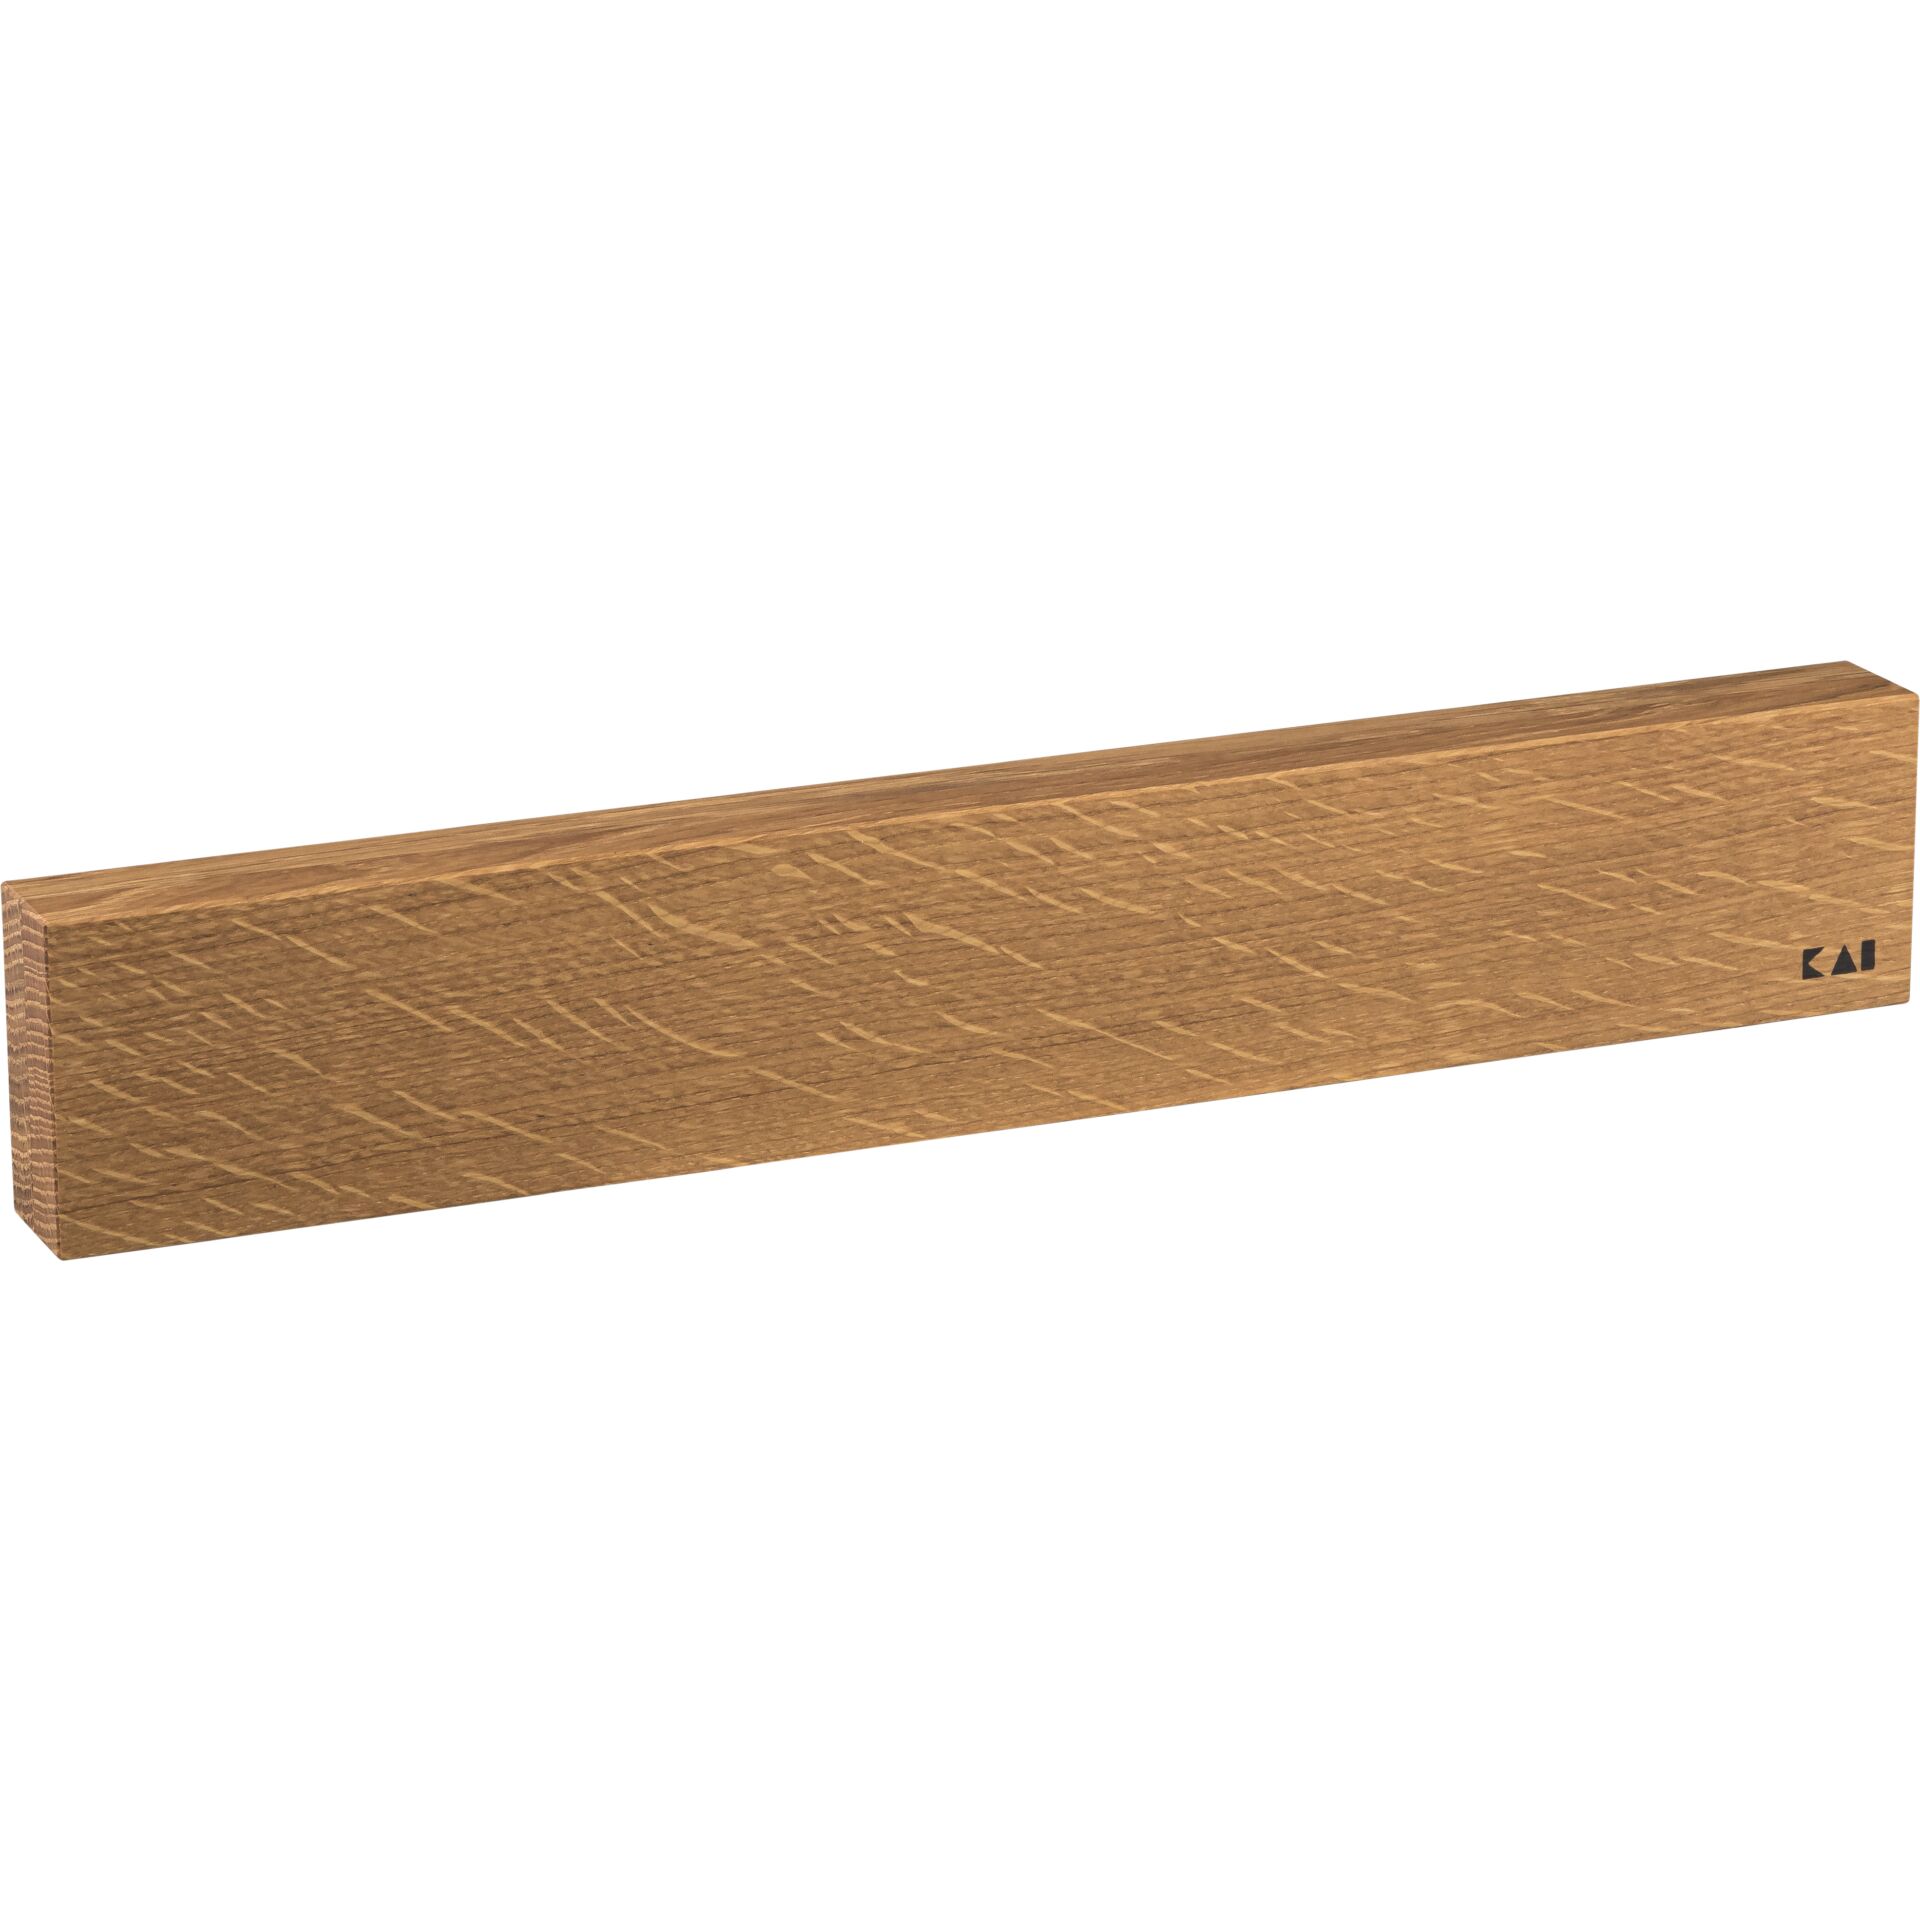 KAI Shun   barra magnetica in legno, quercia